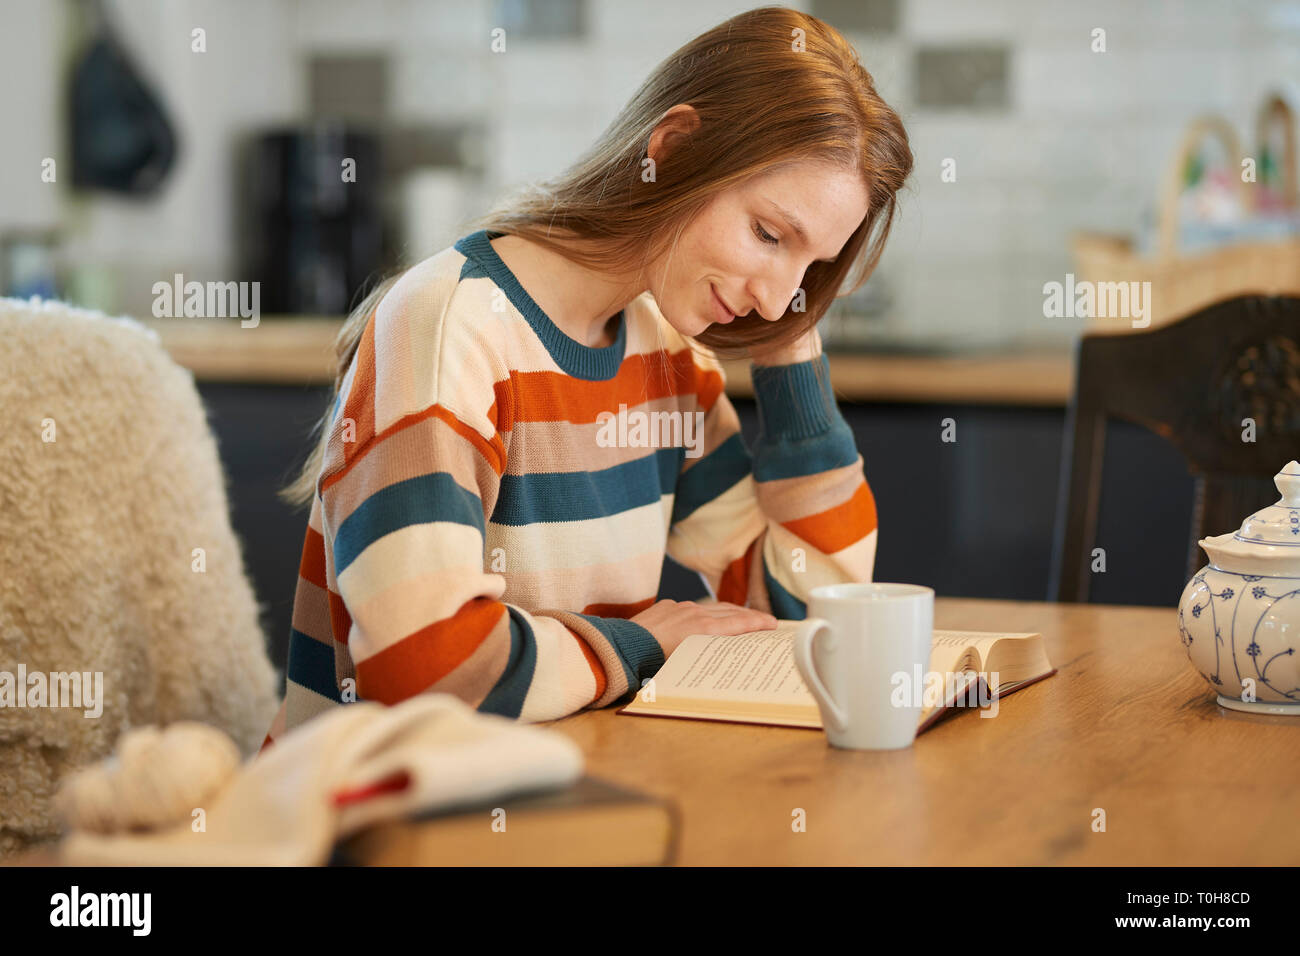 Bella donna bionda seduti ad un tavolo la lettura di un libro, sorridente, uncinetto gli utensili e i libri sul tavolo Foto Stock